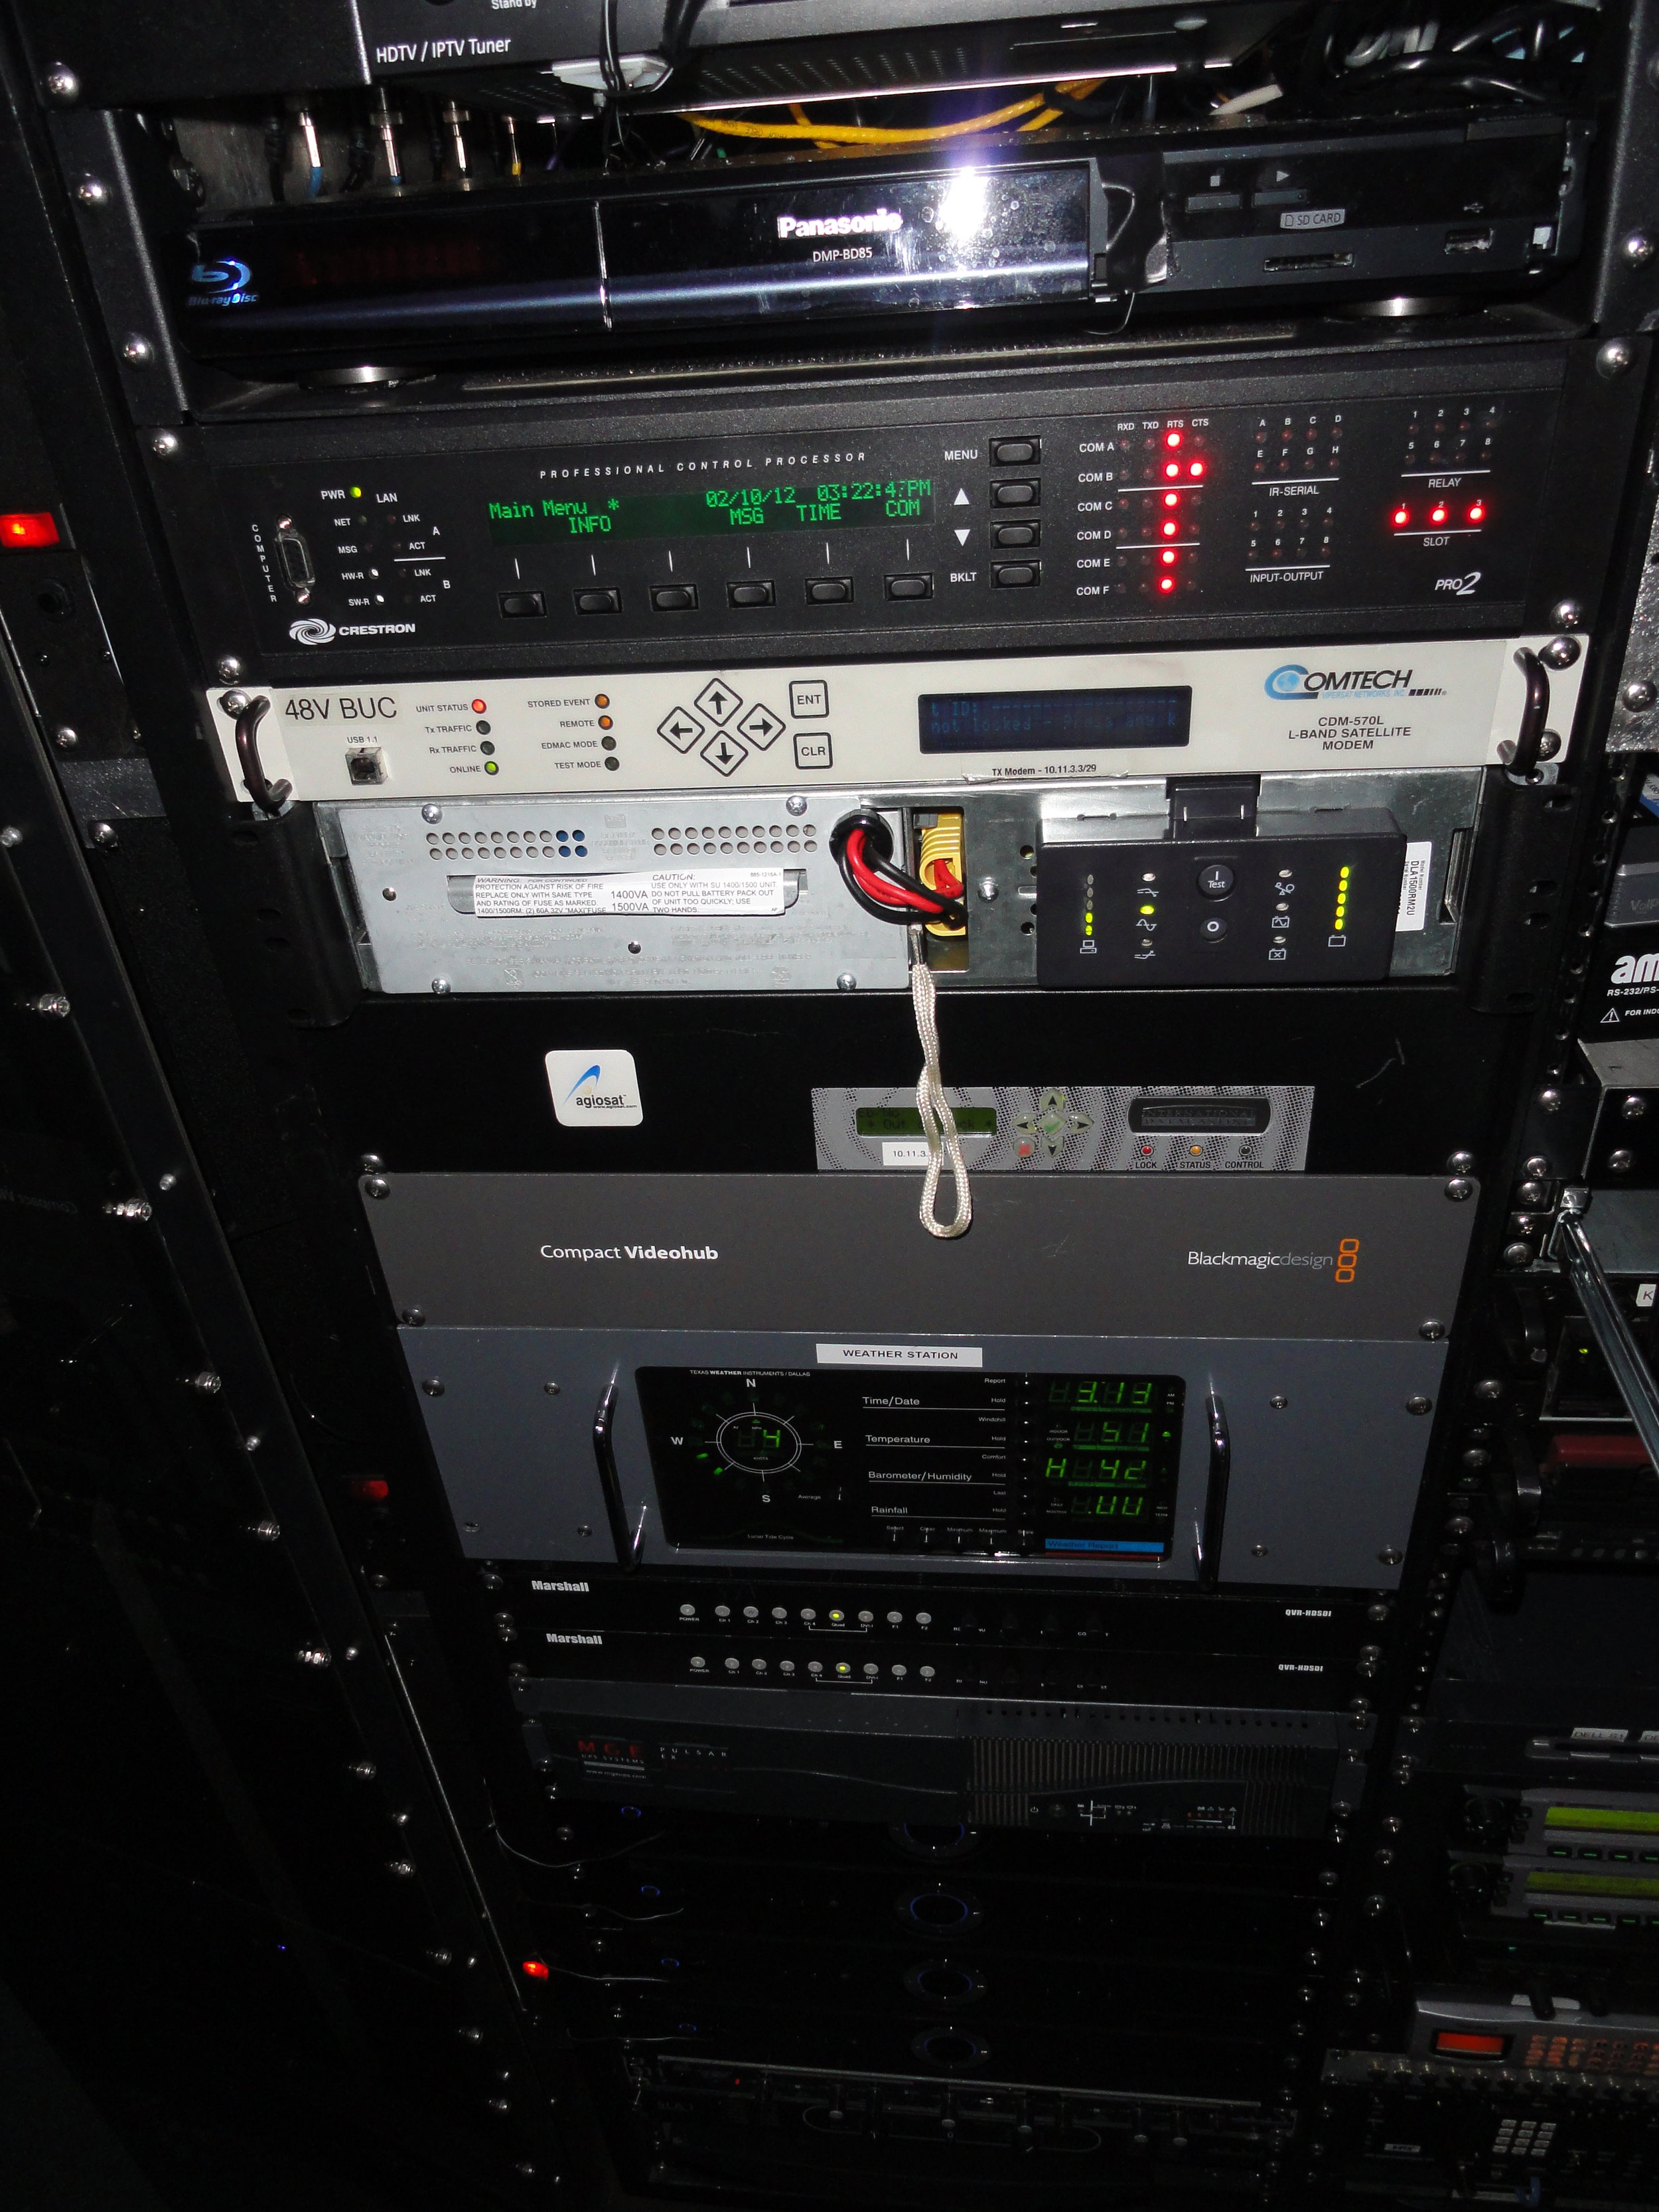 25 CVS - Arlington Fire Mobile Command AV Upgrade pic #6.JPG